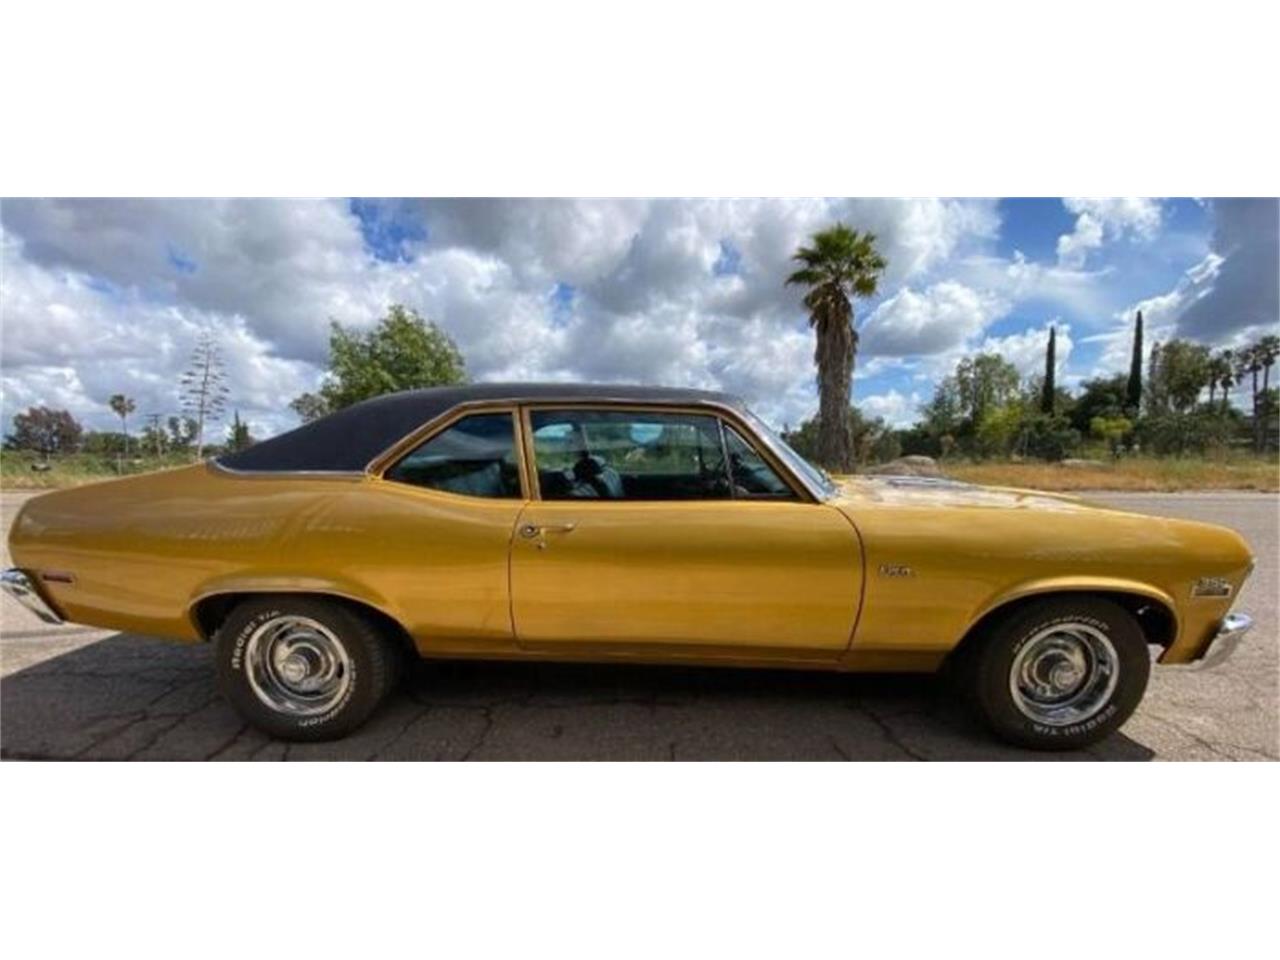 For Sale: 1972 Chevrolet Nova in Cadillac, Michigan for sale in Cadillac, MI